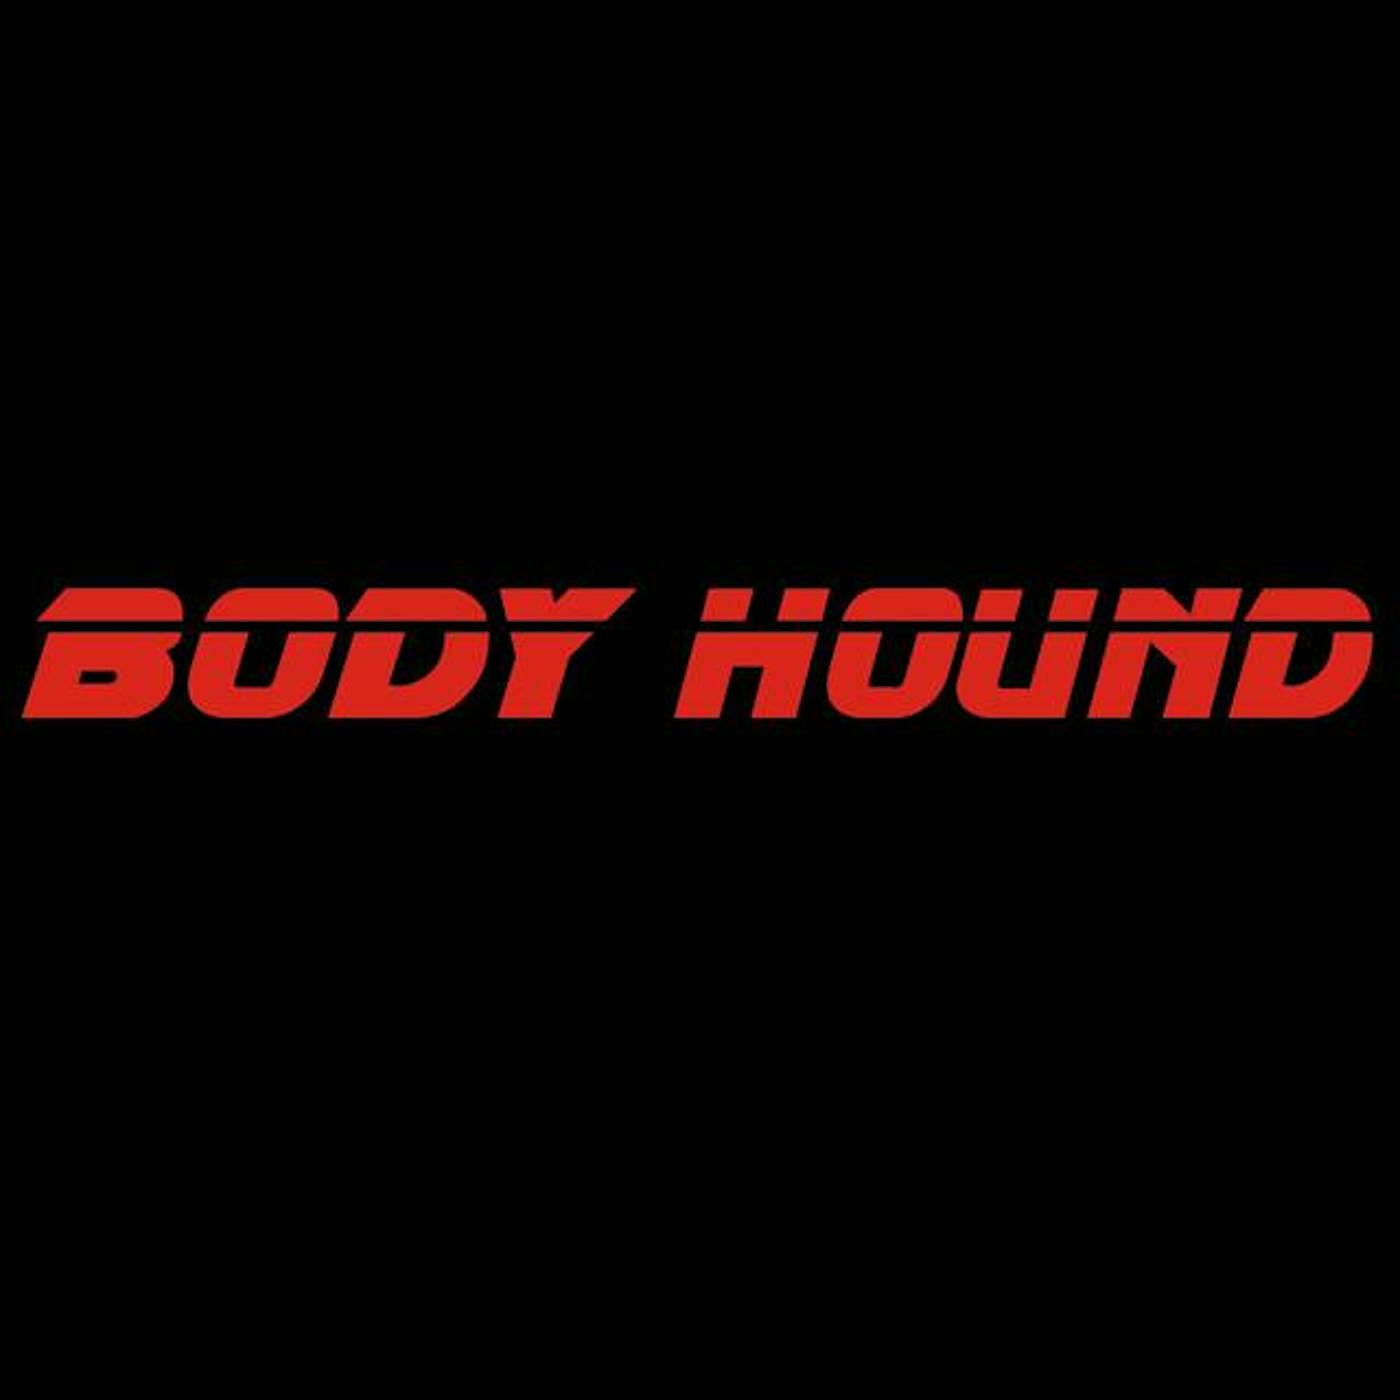 Body Hound